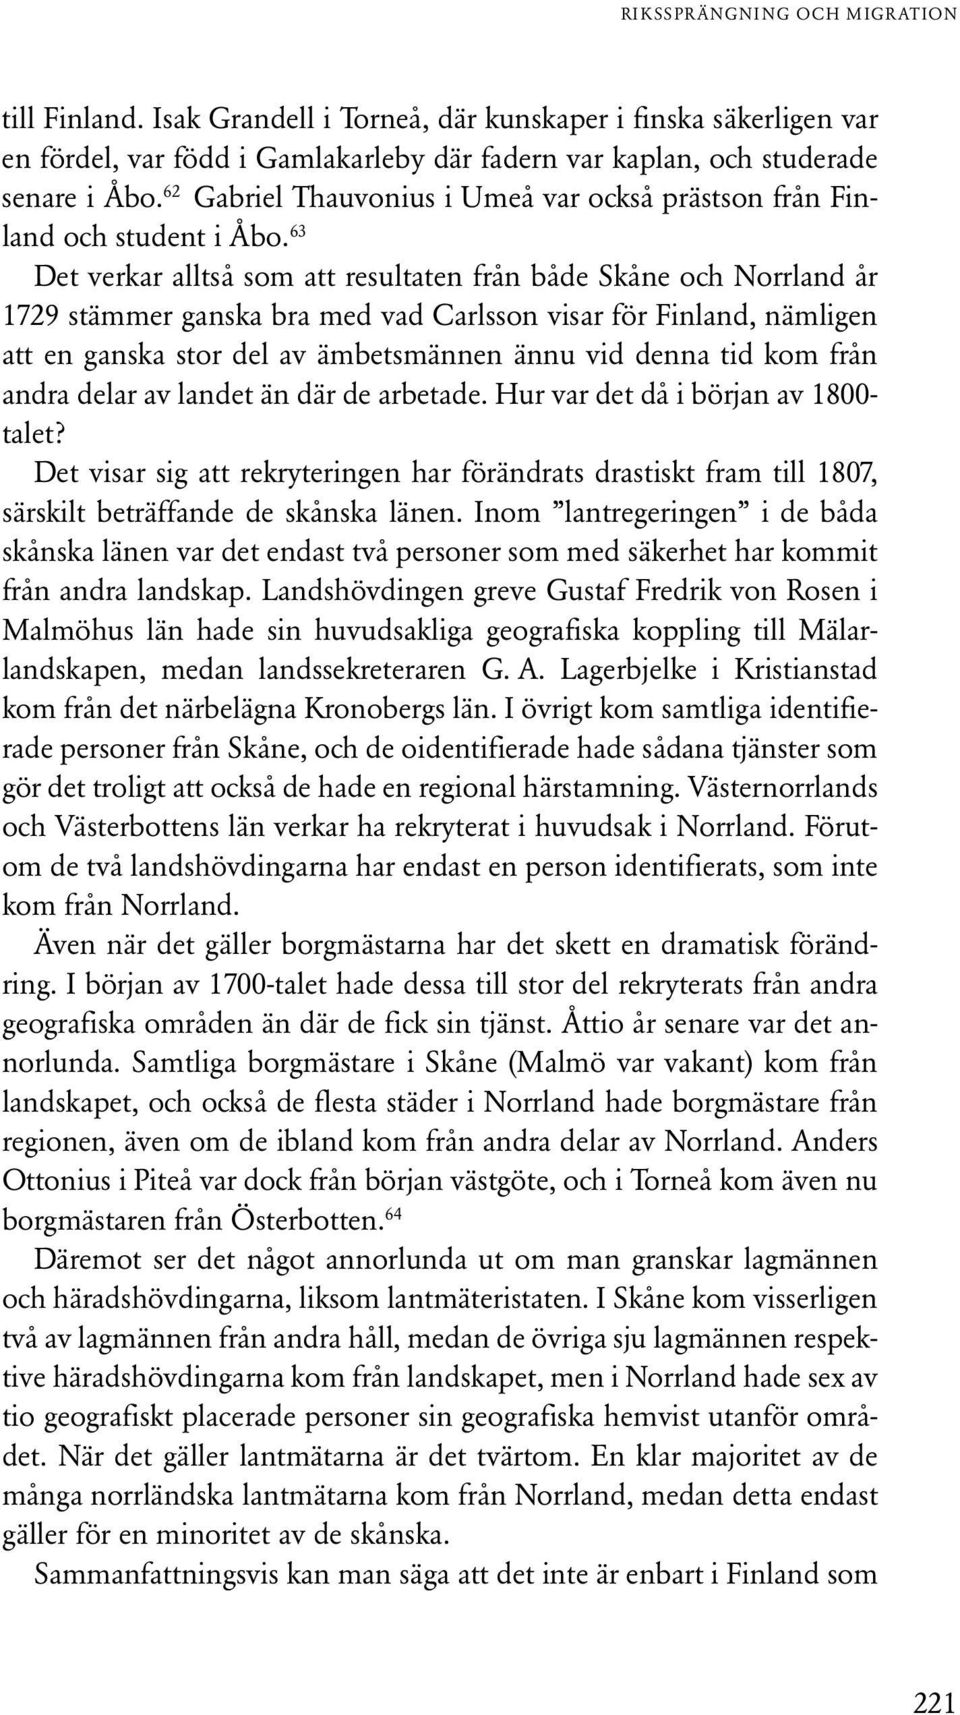 63 Det verkar alltså som att resultaten från både Skåne och Norrland år 1729 stämmer ganska bra med vad Carlsson visar för Finland, nämligen att en ganska stor del av ämbetsmännen ännu vid denna tid